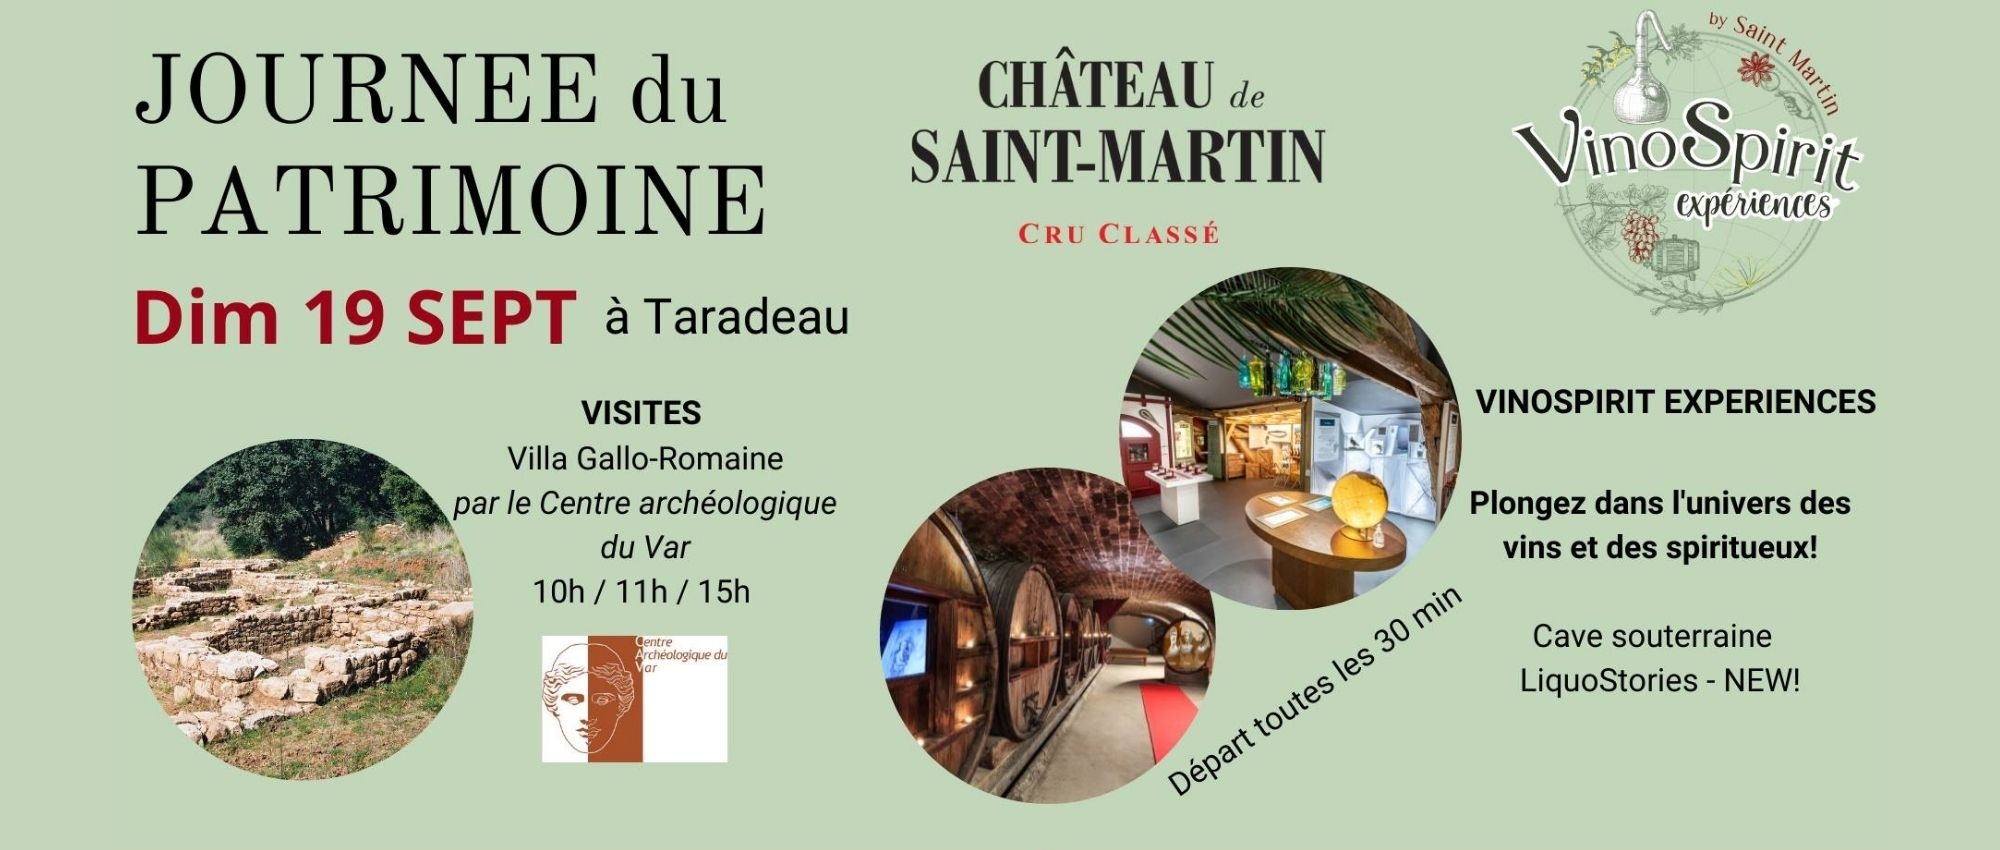 Journée du Patrimoine au Château de Saint Martin-Liquoristerie de Provence